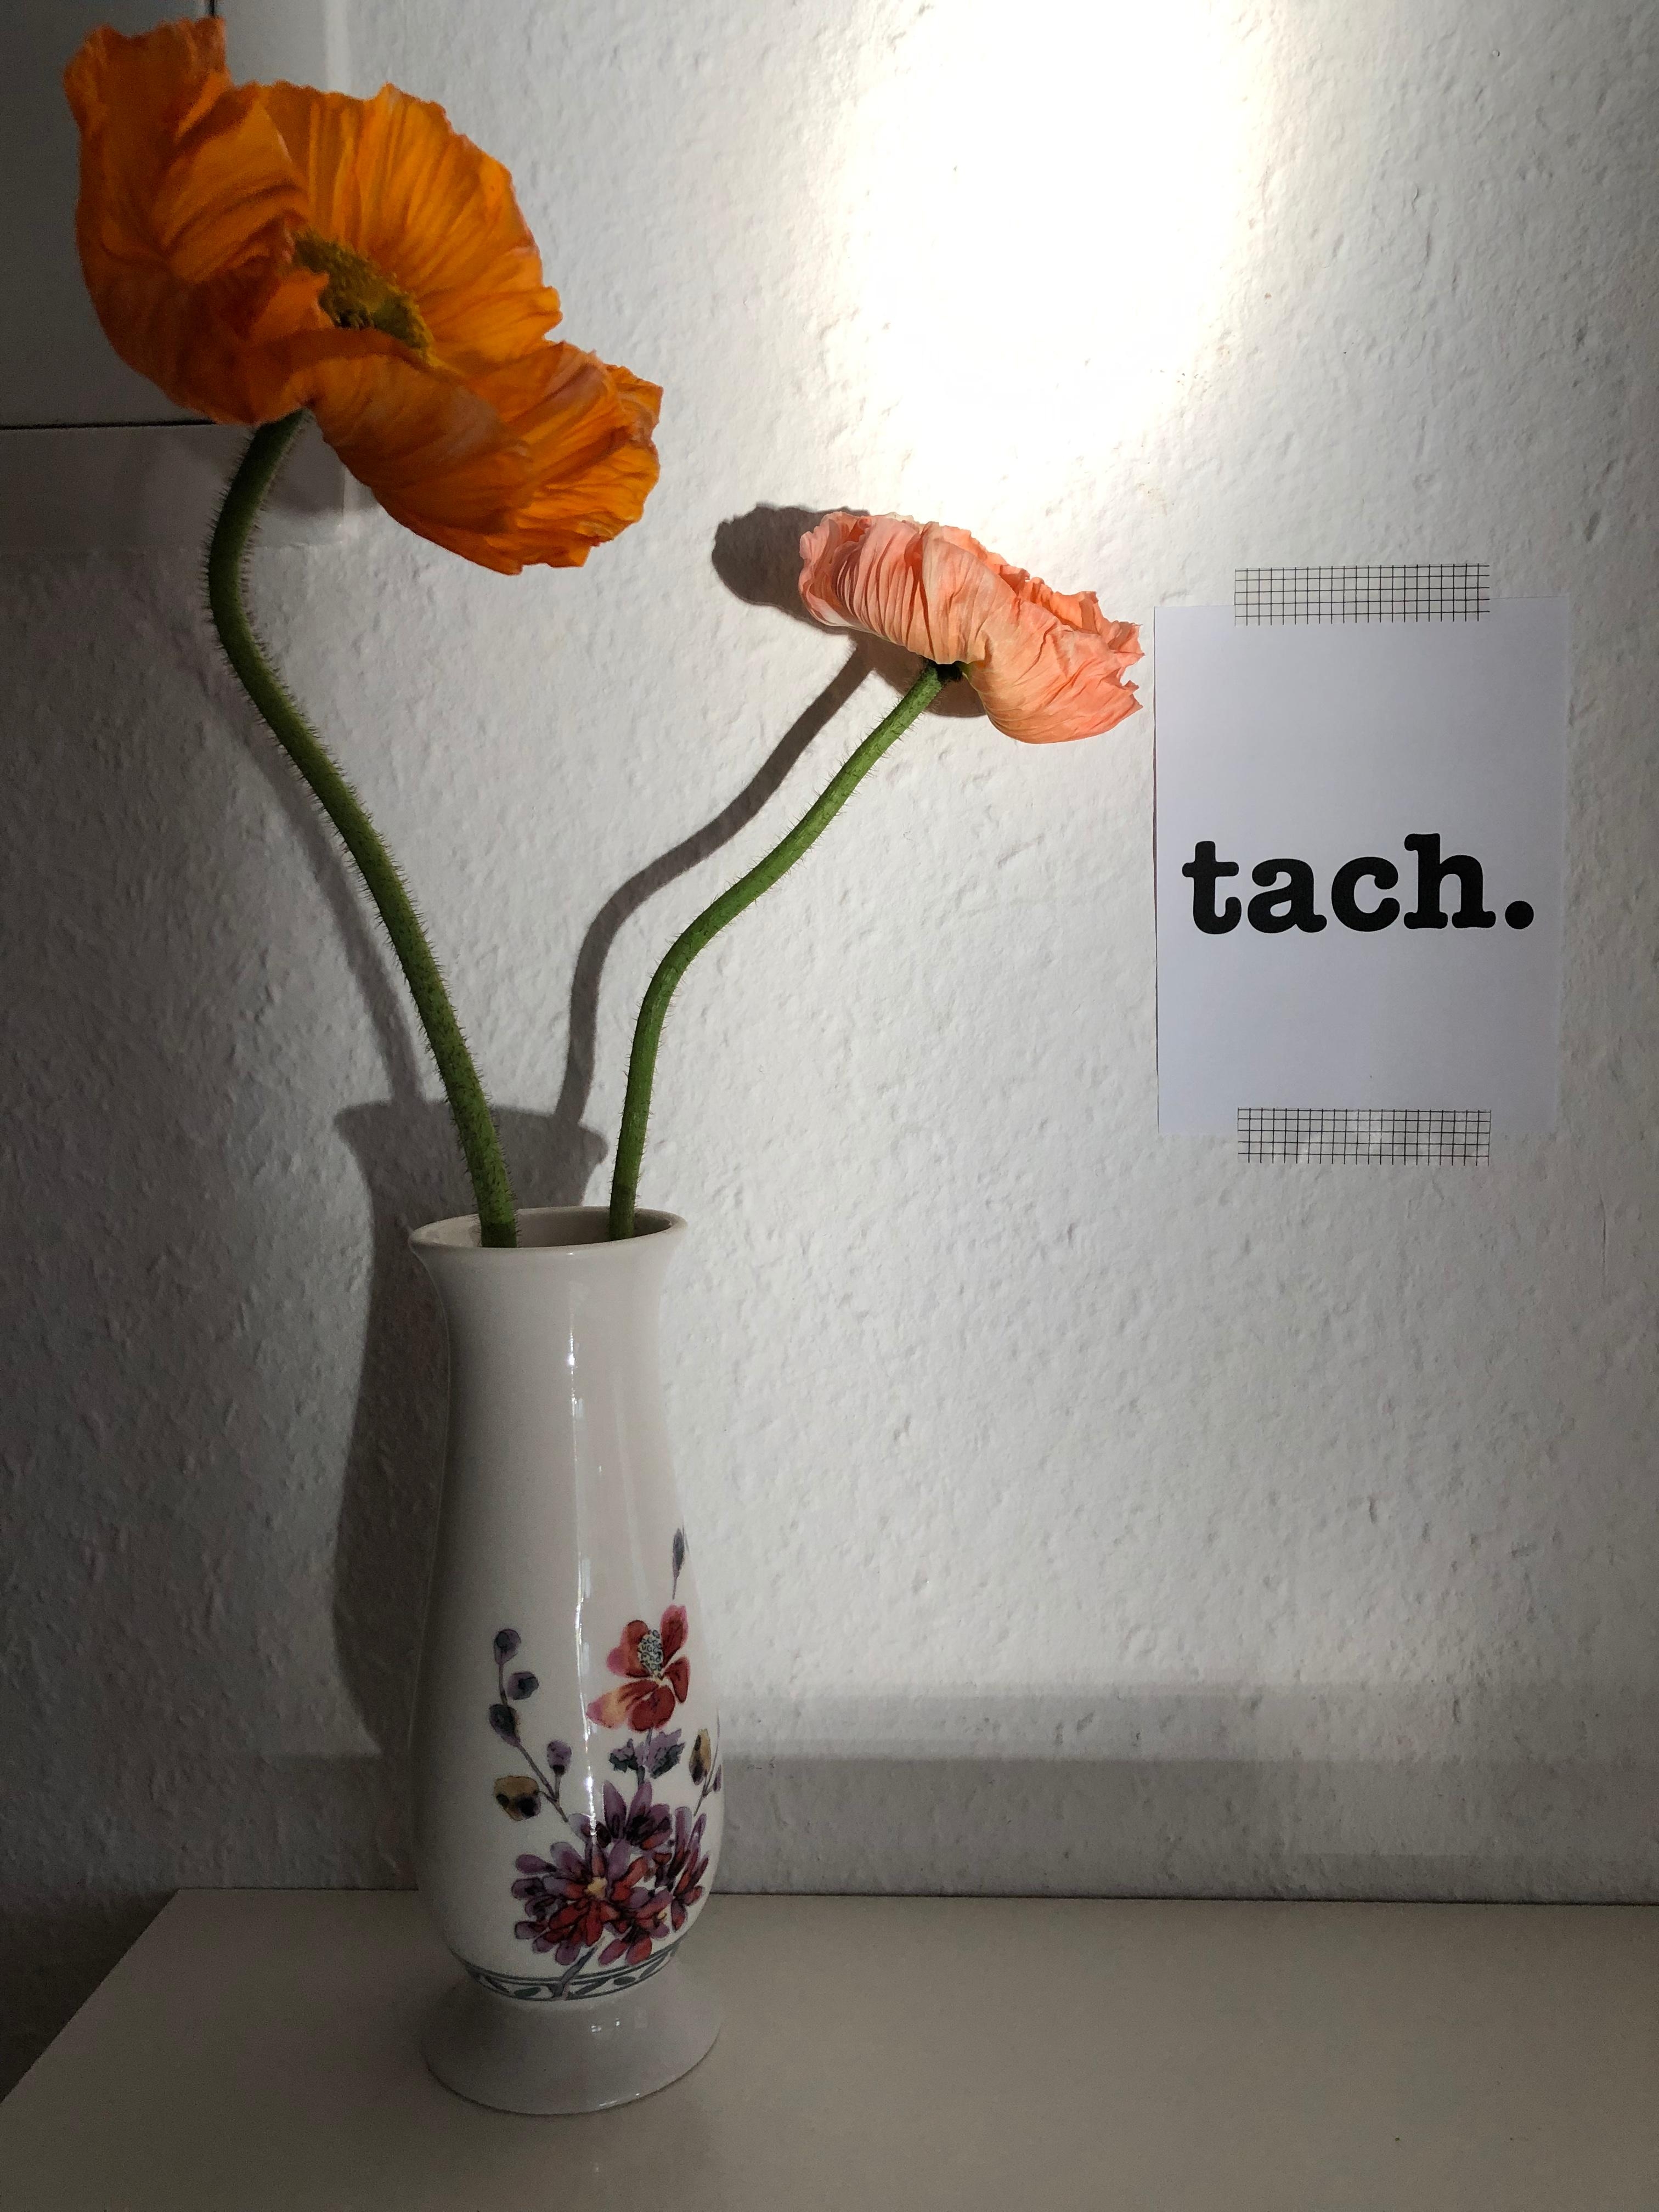 tach. #flowerfriday #flur